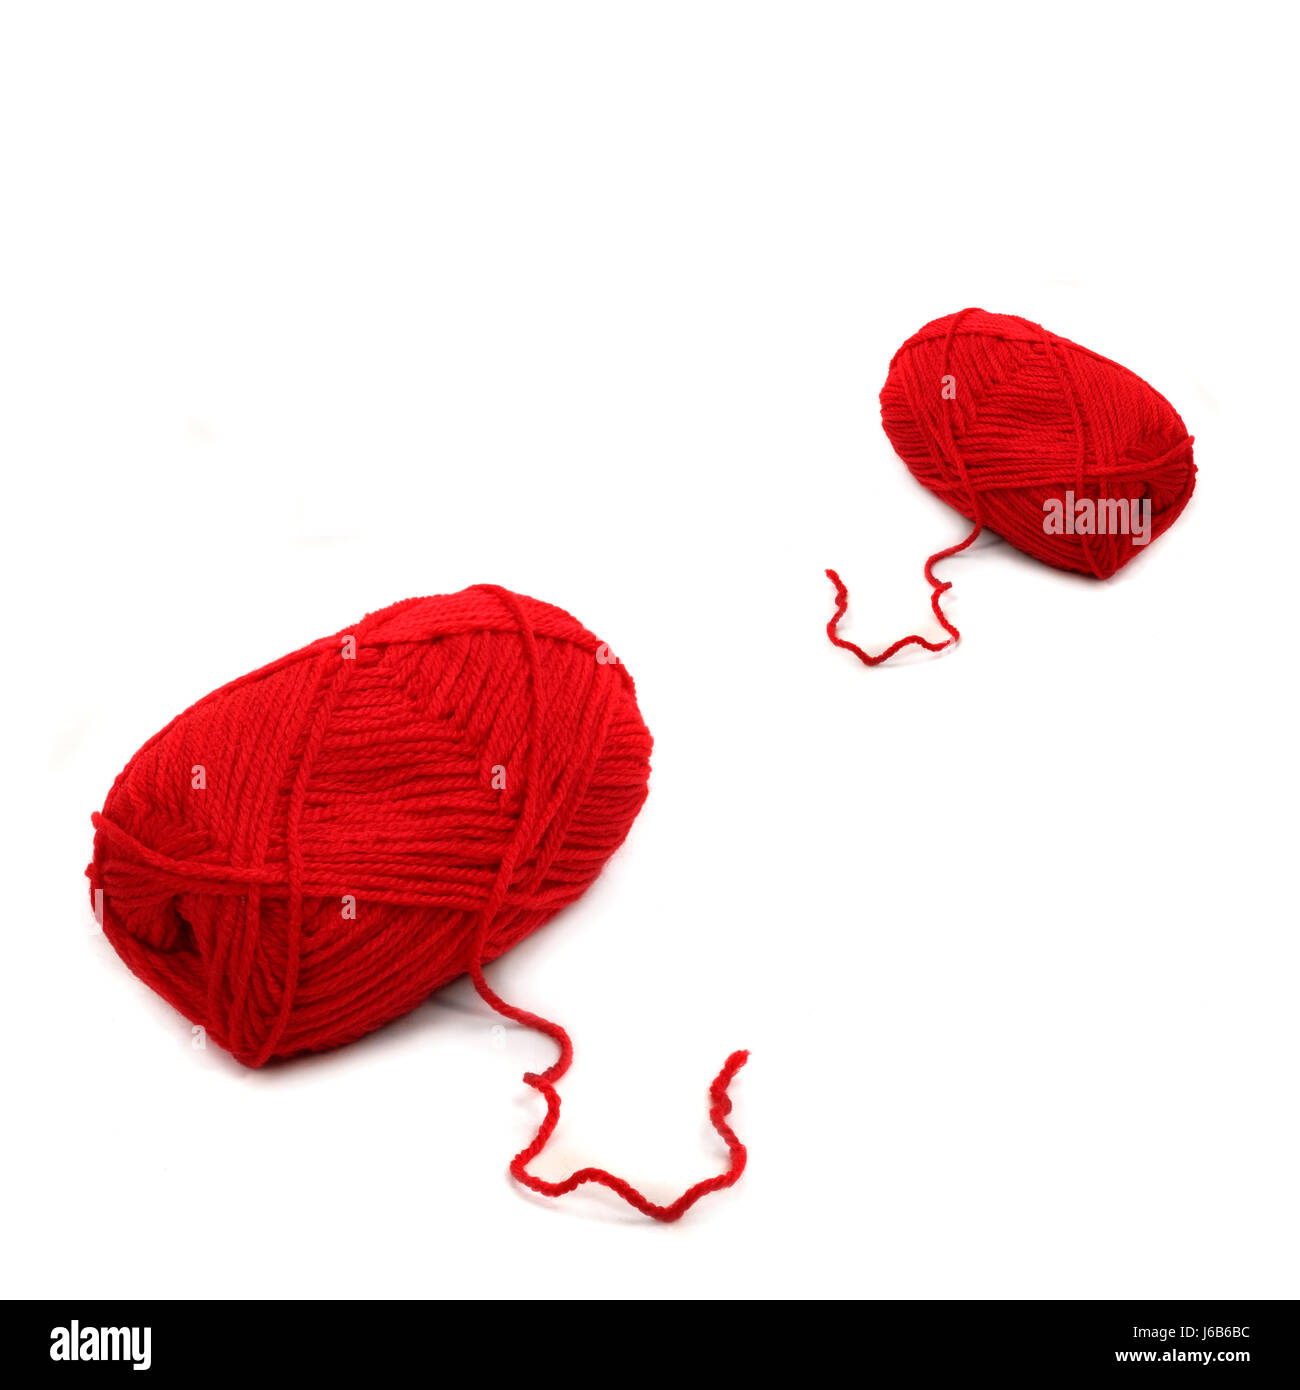 Hilo de lana tejida de hilos de lana tejido desenrollado bola roja cerca de macro macro Foto de stock